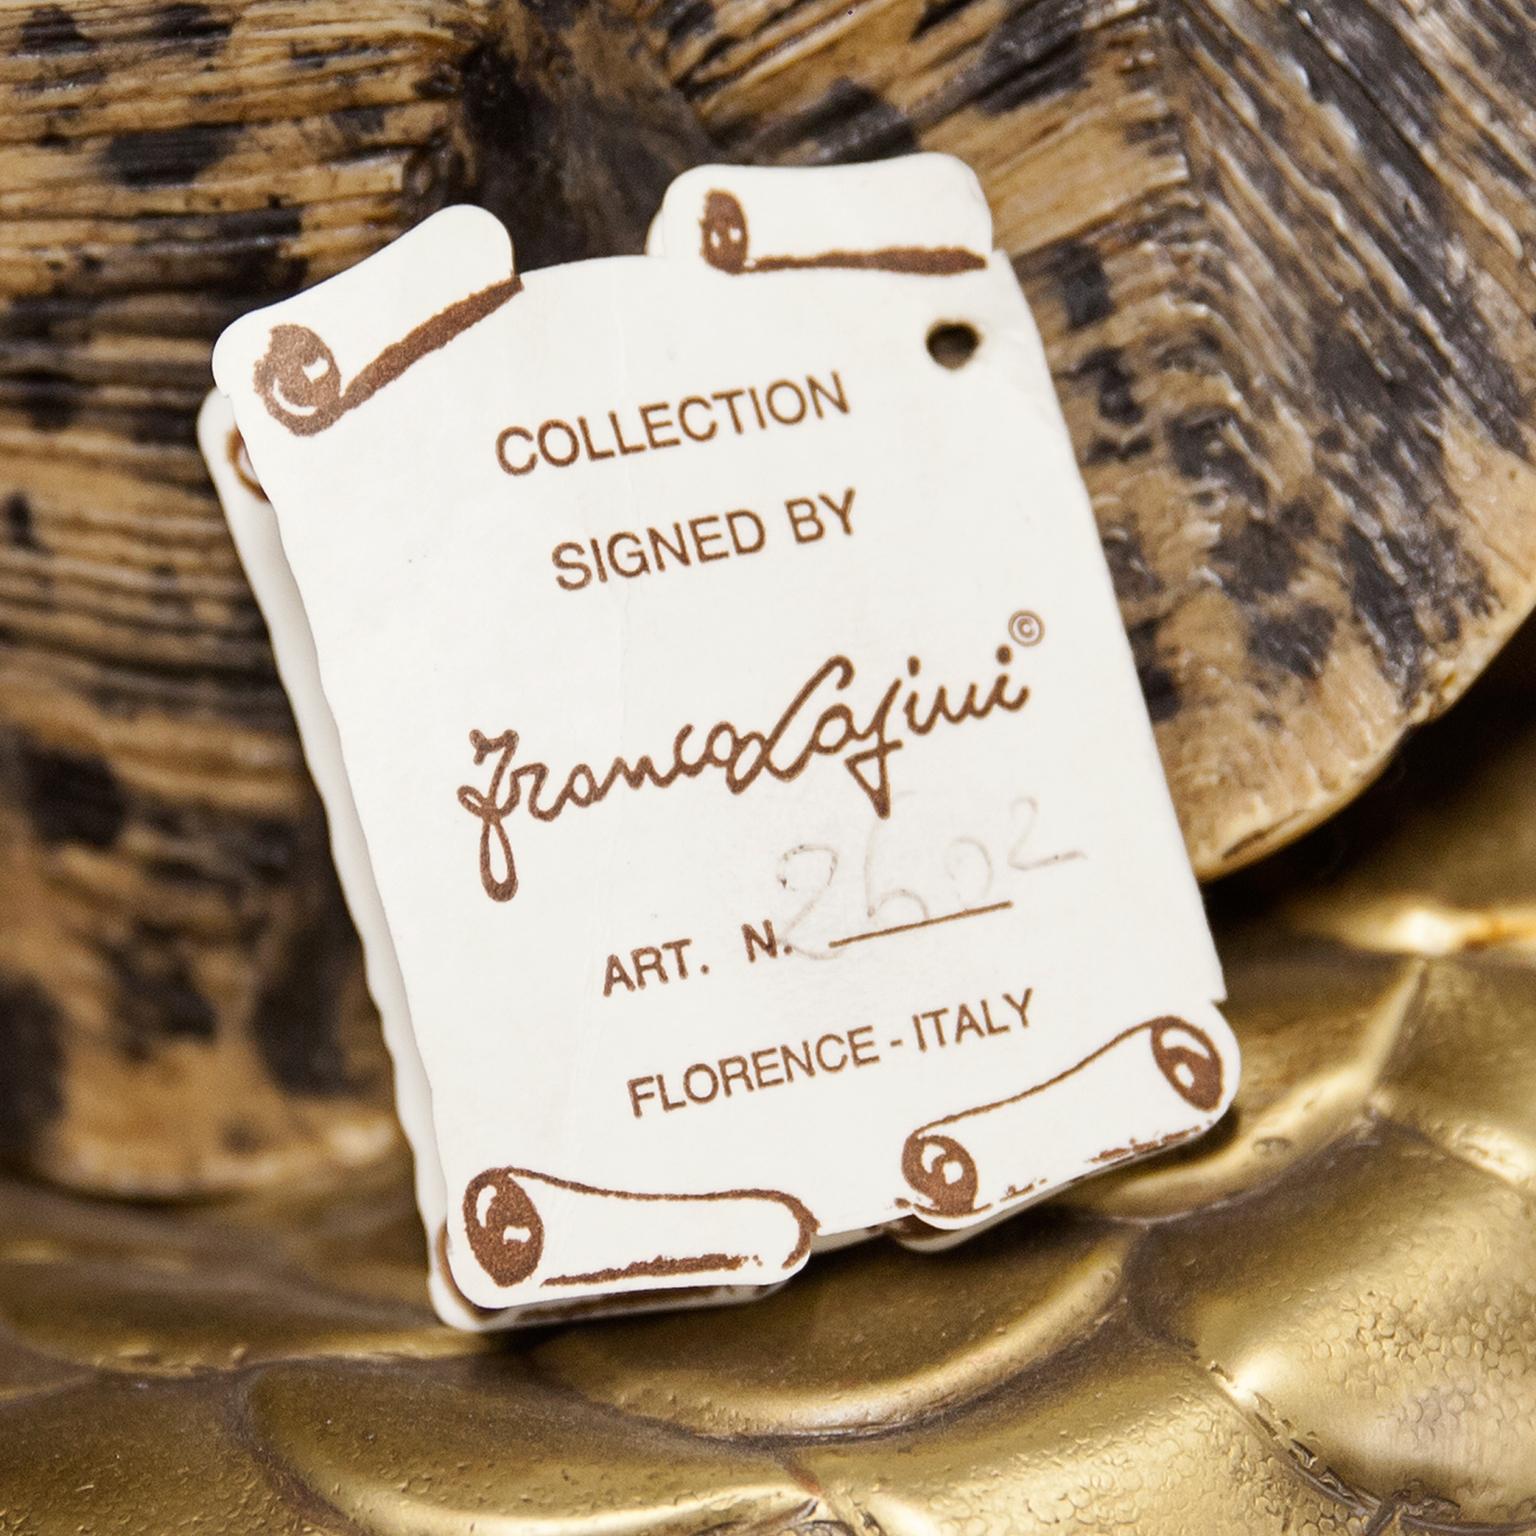 Brass Franco Lapini Life Size Fiberglass Turtle Shell Stool 1970s For Sale